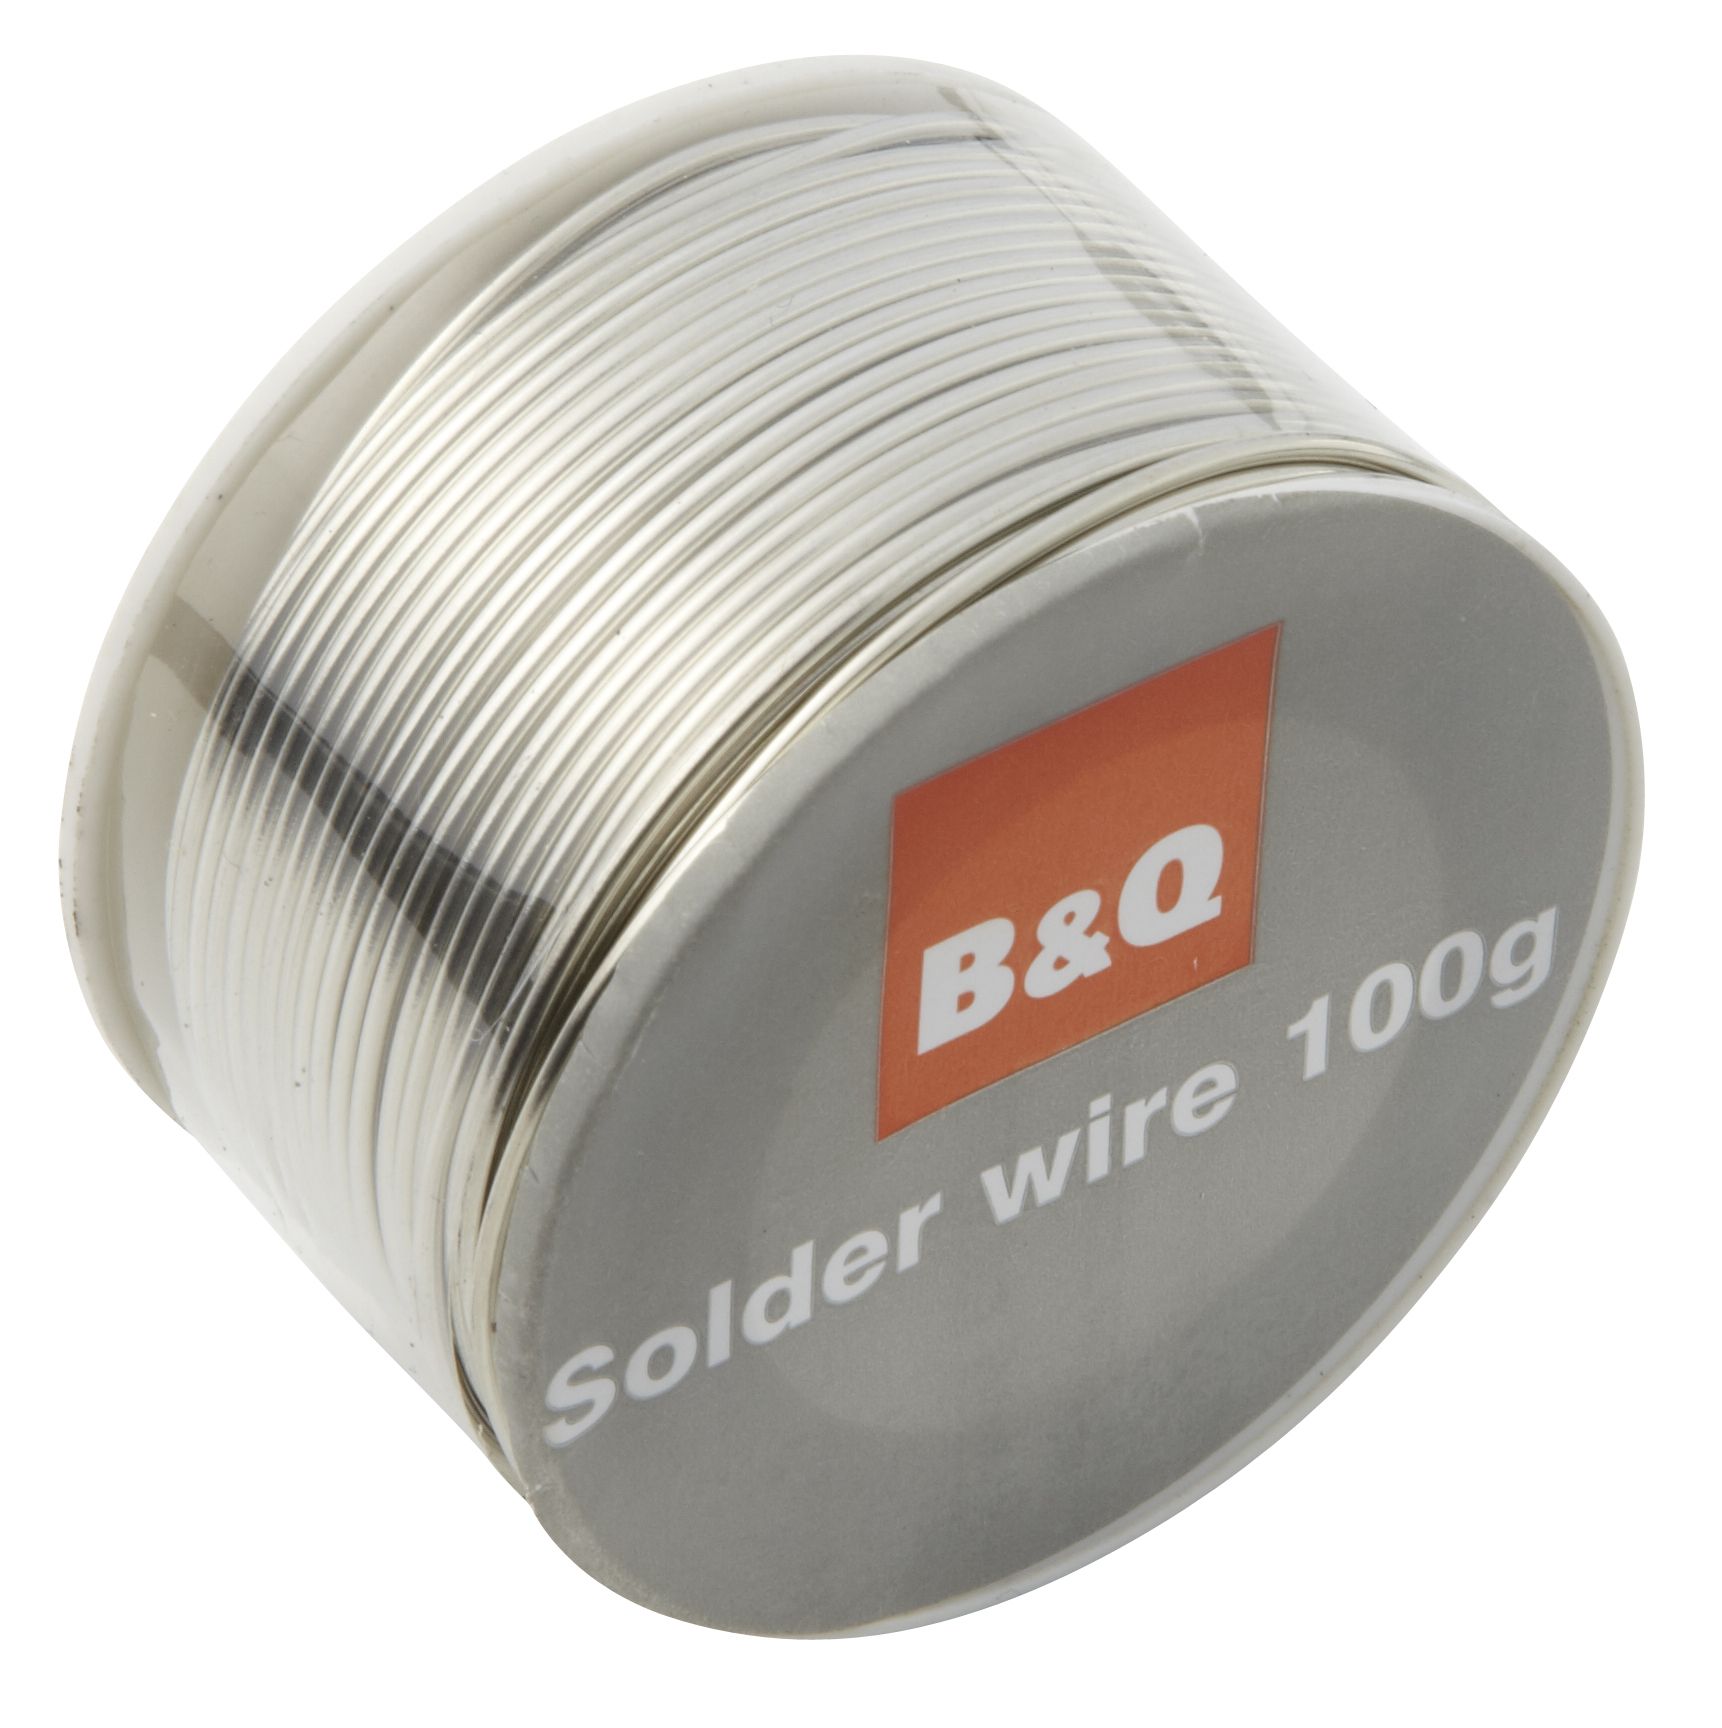 Solder wire, 100g